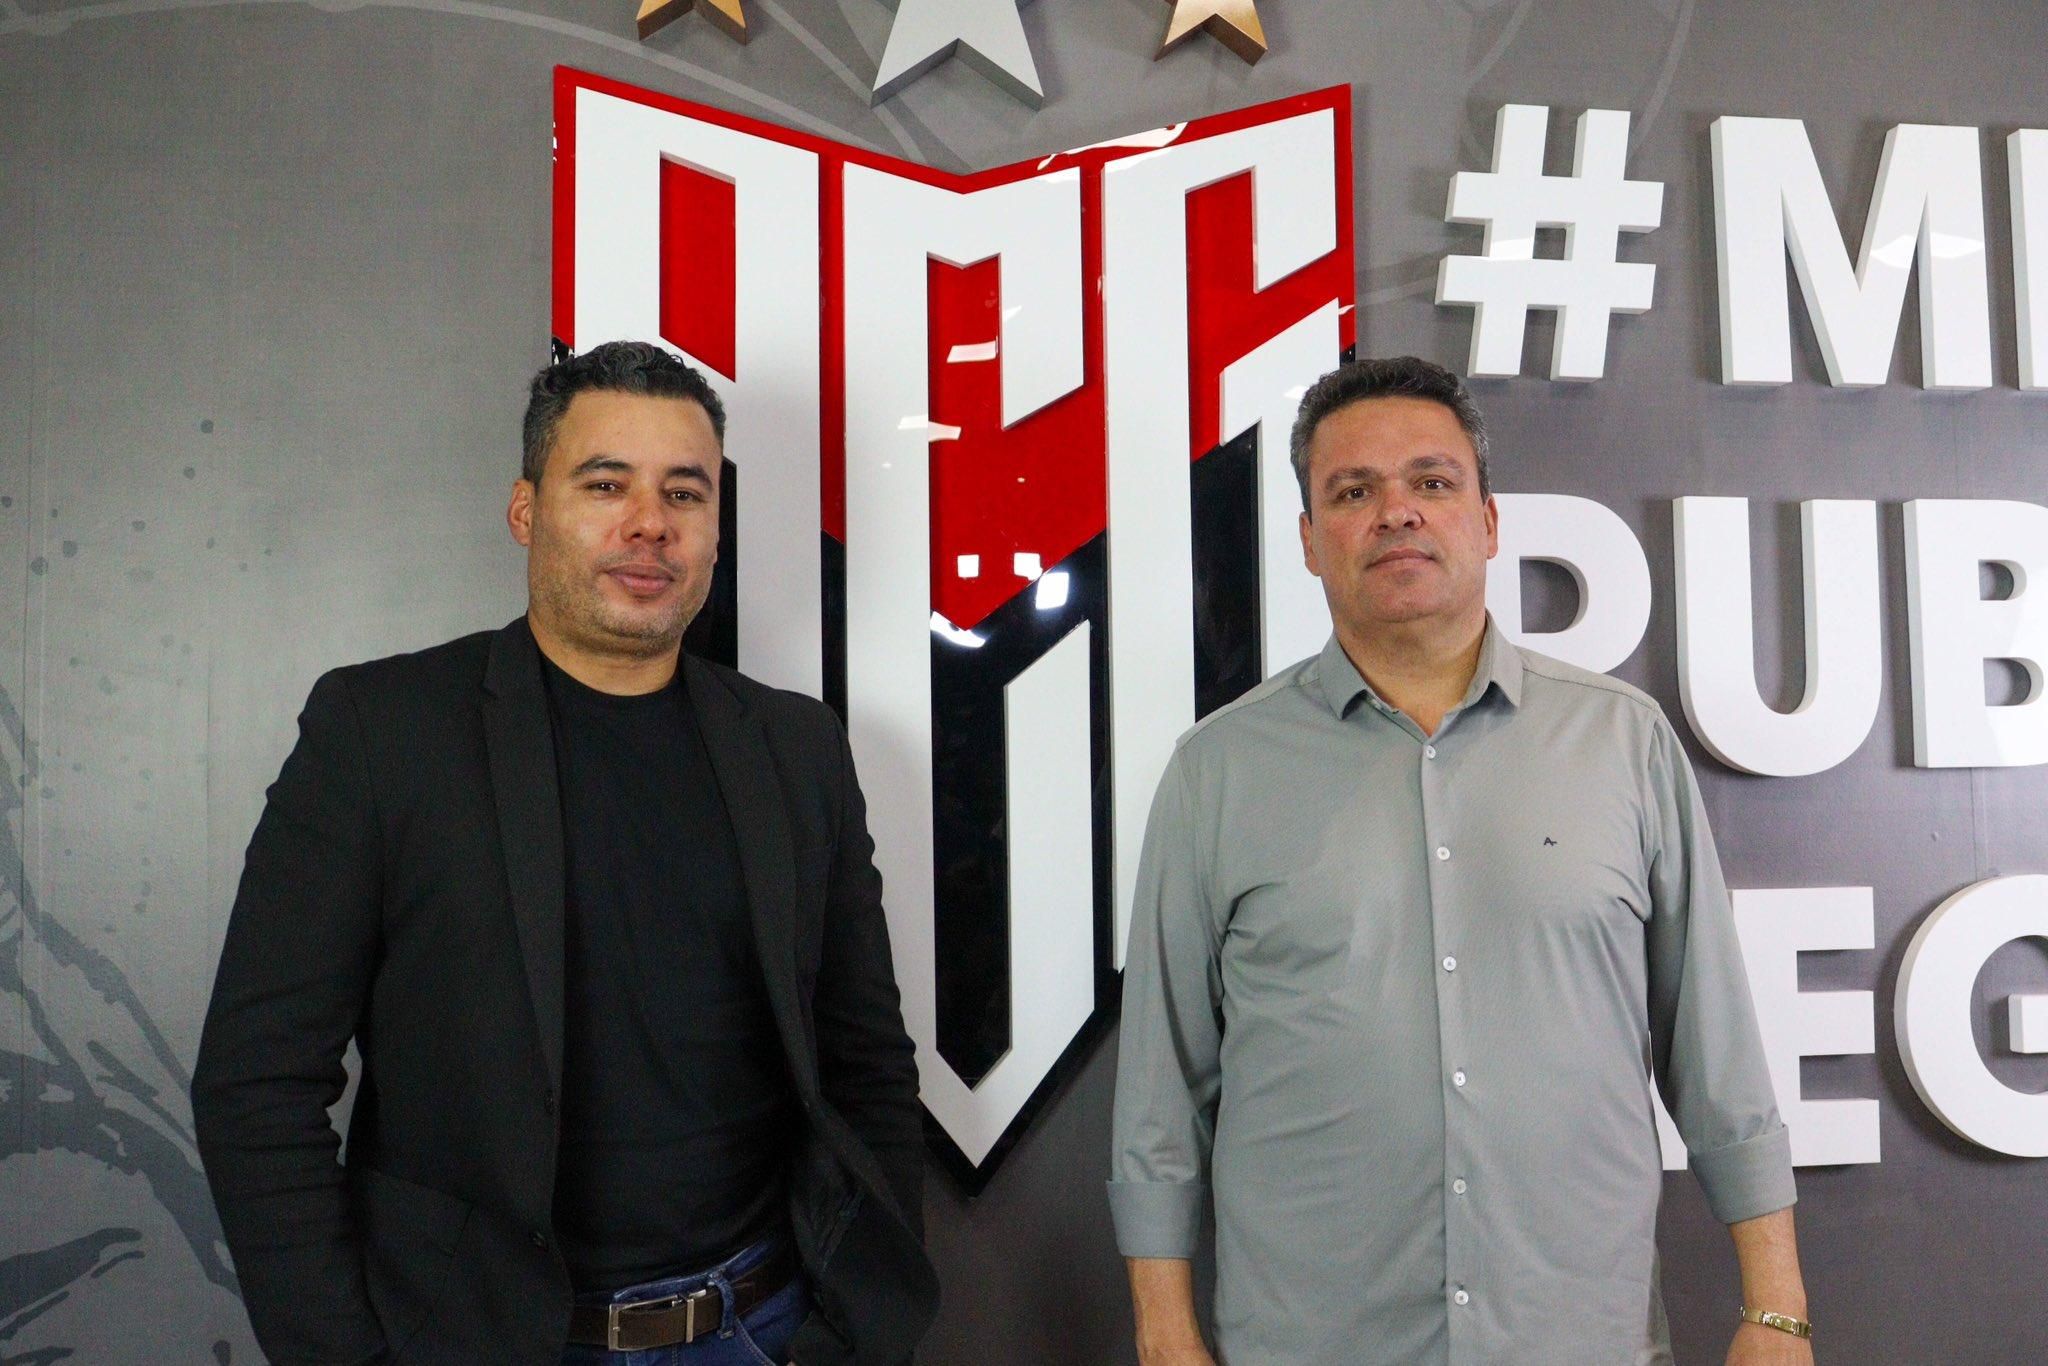 Jair Ventura cobra dever de casa do Atlético-GO e vê Série B